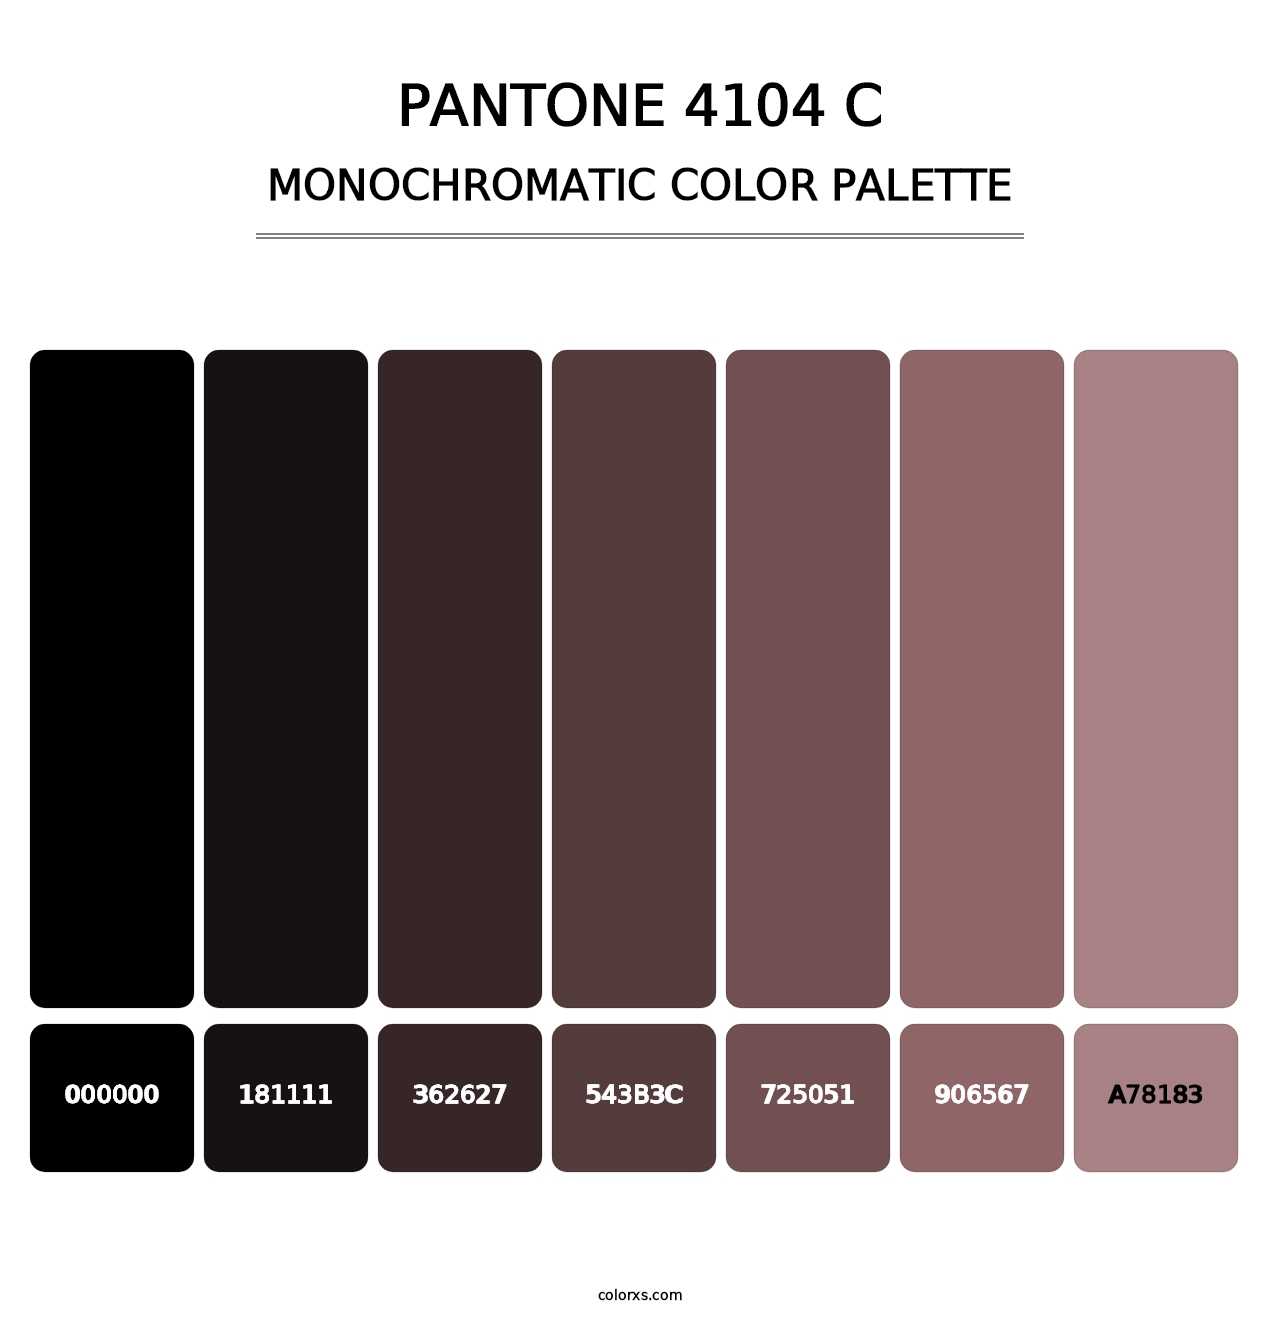 PANTONE 4104 C - Monochromatic Color Palette